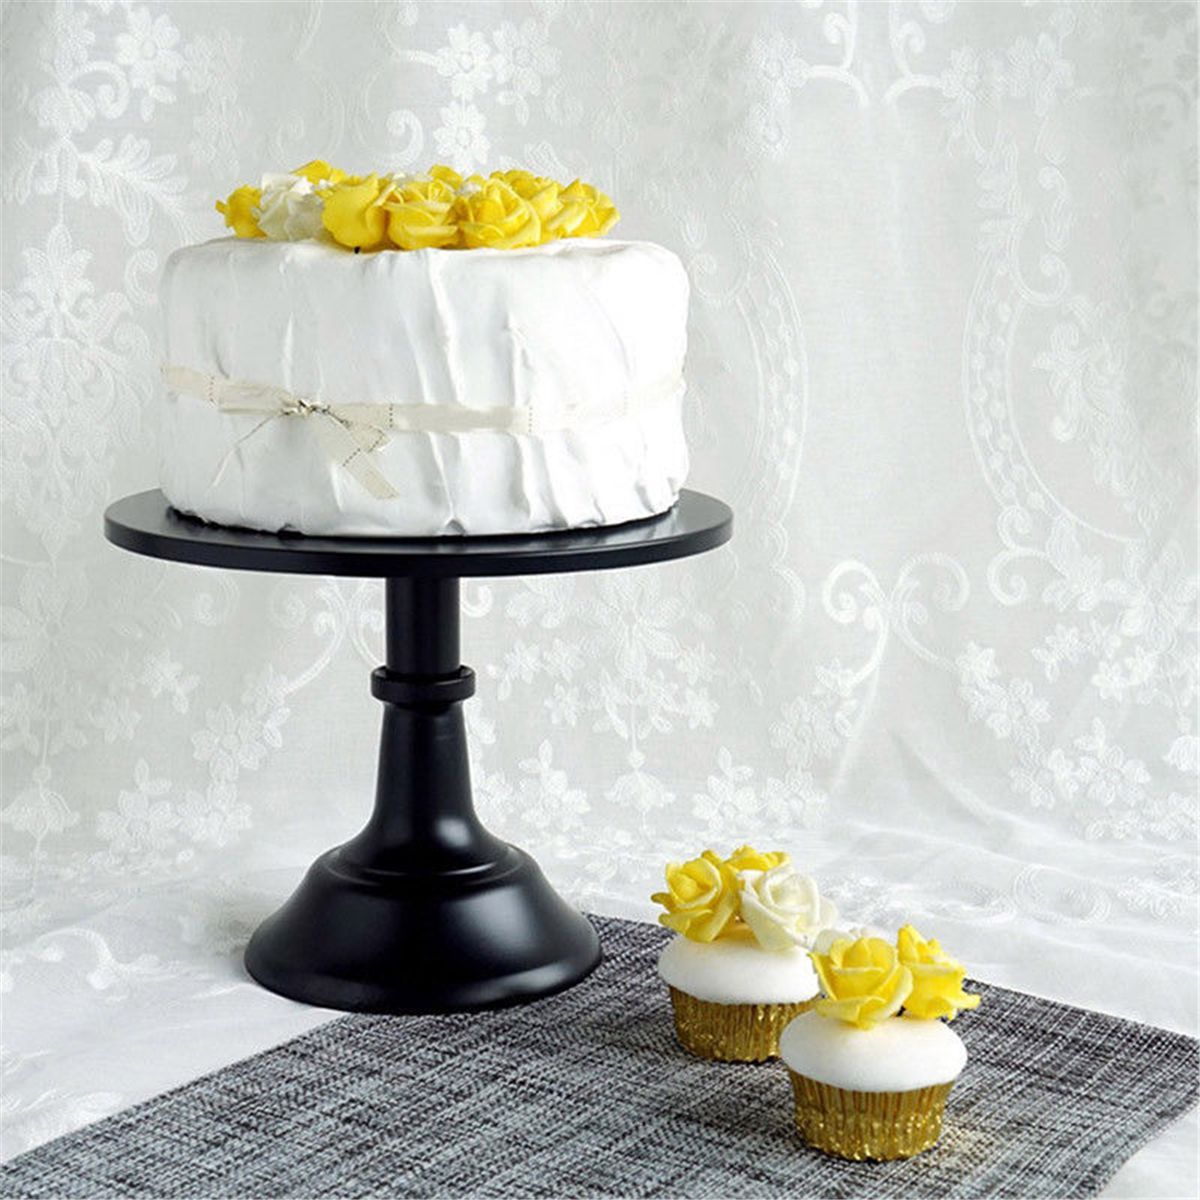 10-Inch-Iron-Round-Cake-Stand-Pedestal-Dessert-Holder-Display-Wedding-Party-Decorations-1380318